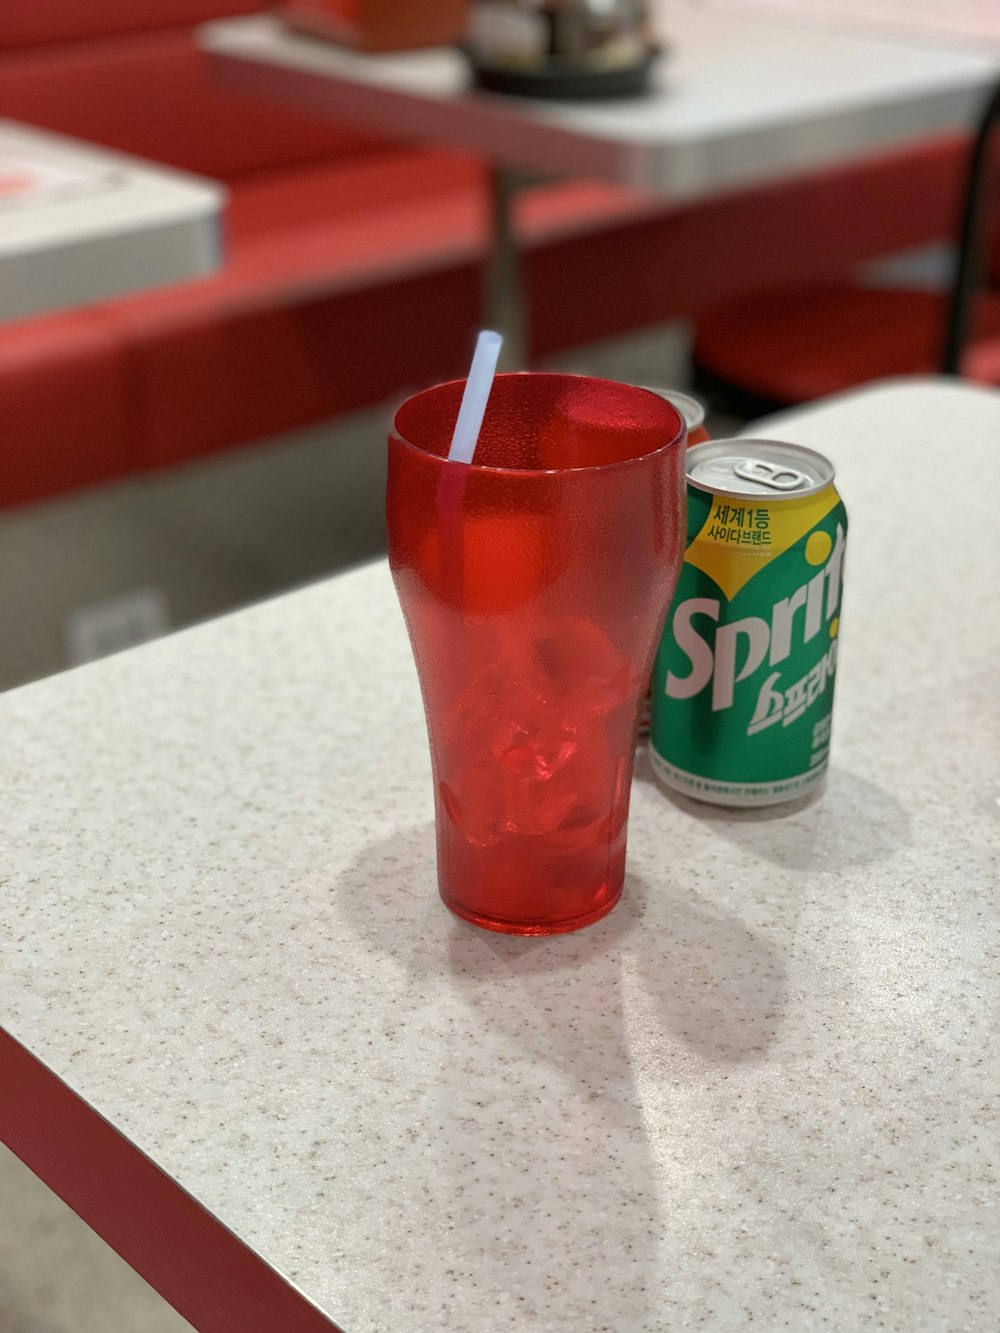 Lattina di soda Sprite accanto al bicchiere da pinta rossa